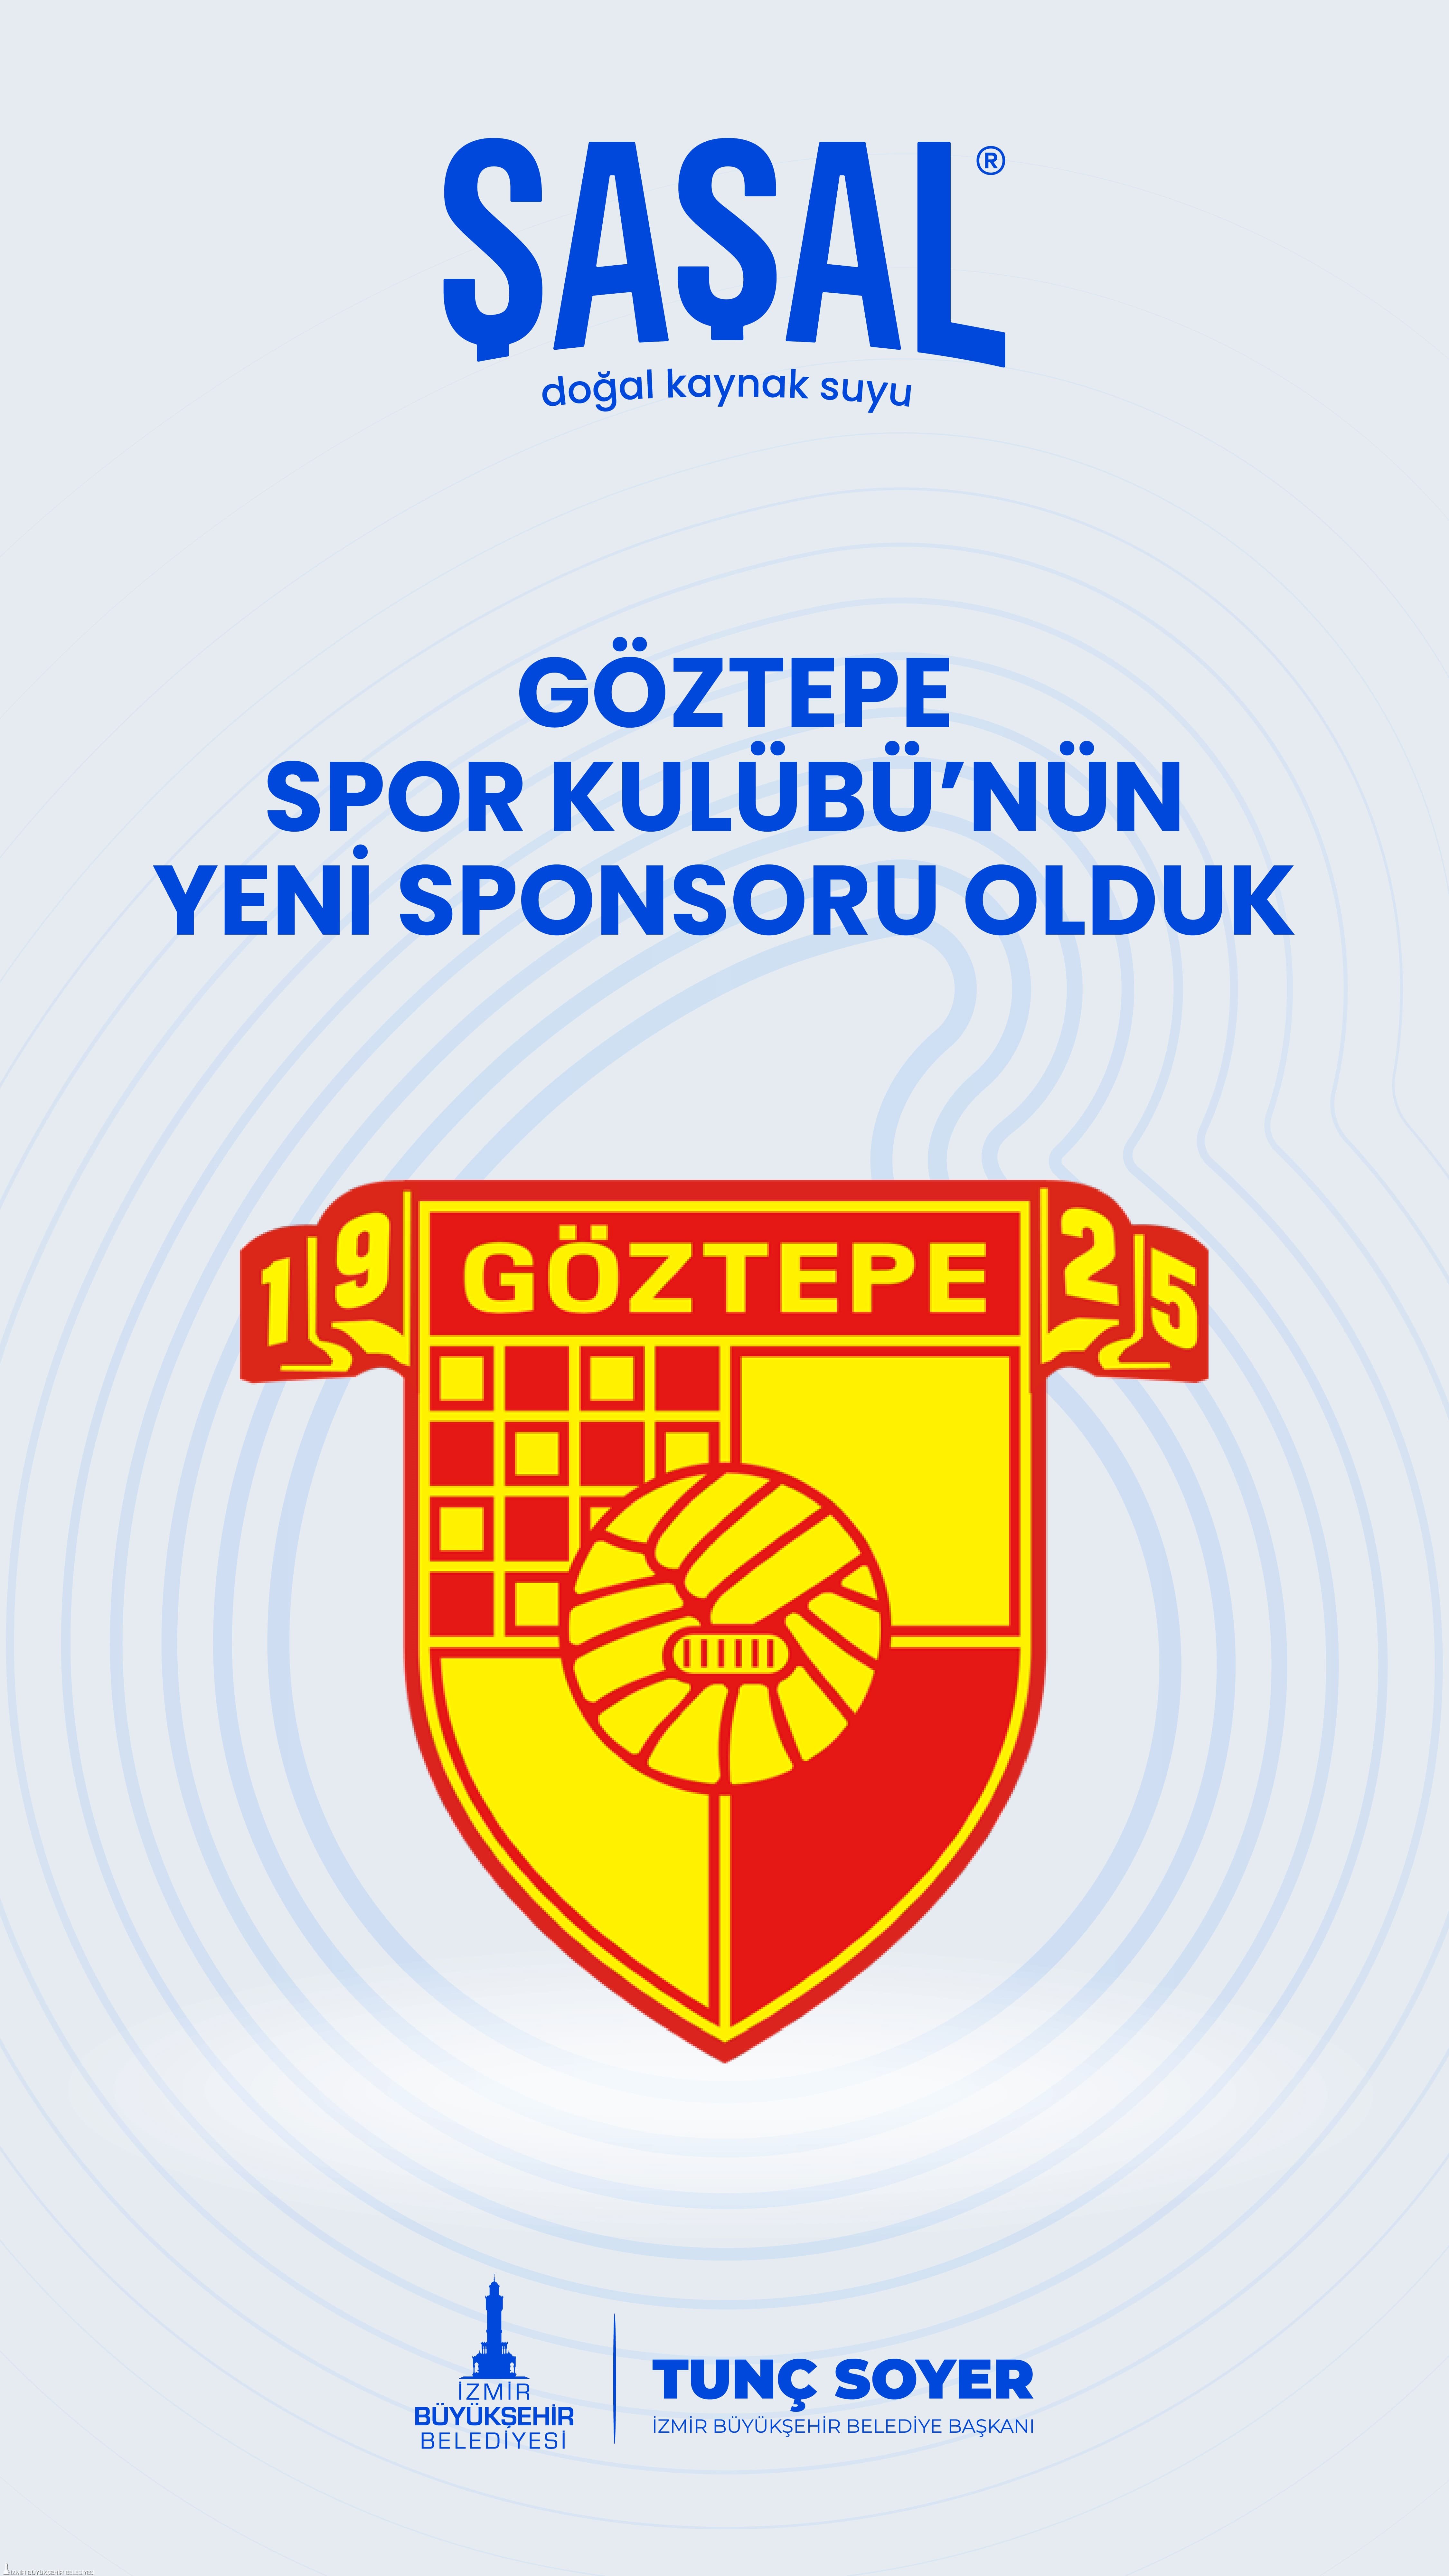 Şaşal Su, Göztepe Spor Kulübü’nün yeni sponsoru oldu